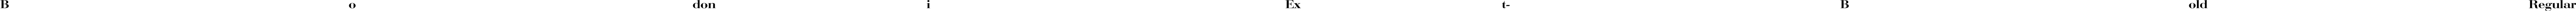 BodoniExt-Bold Regular font - bodoniext-bold.ttf